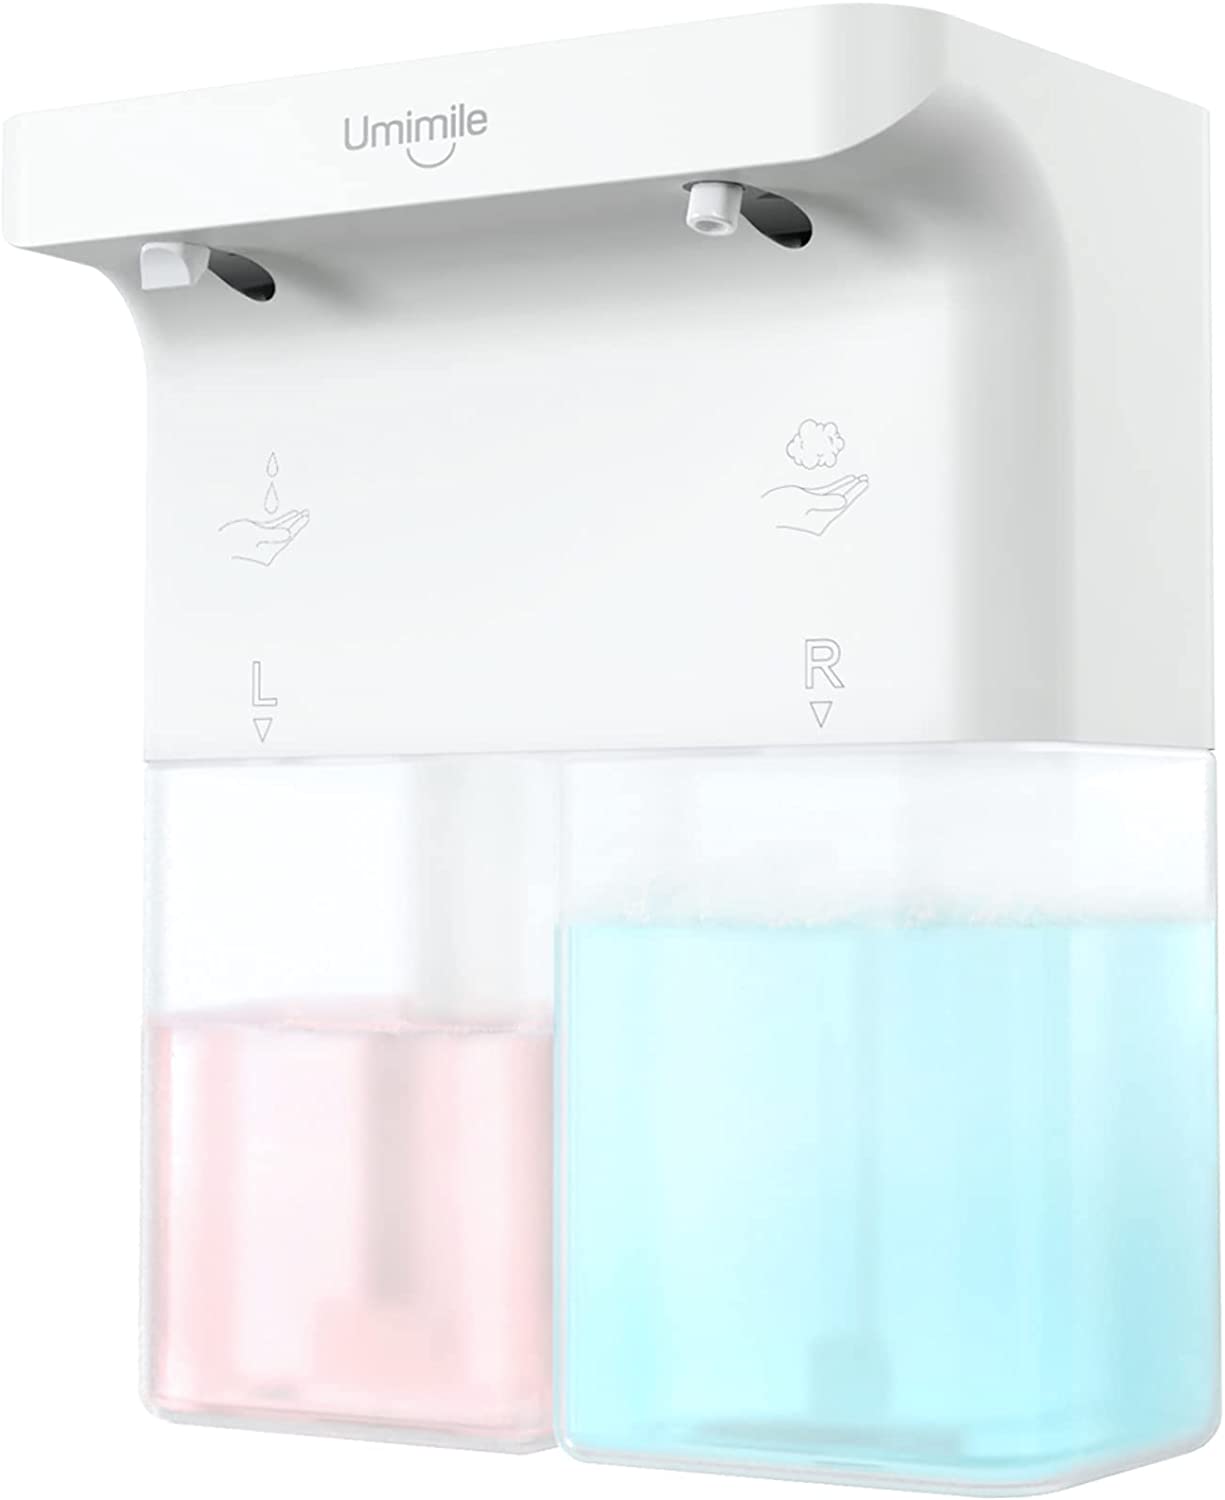 【日本代購】Umimile 雙孔給皂機 300毫升+300毫升 (液體+泡沫)